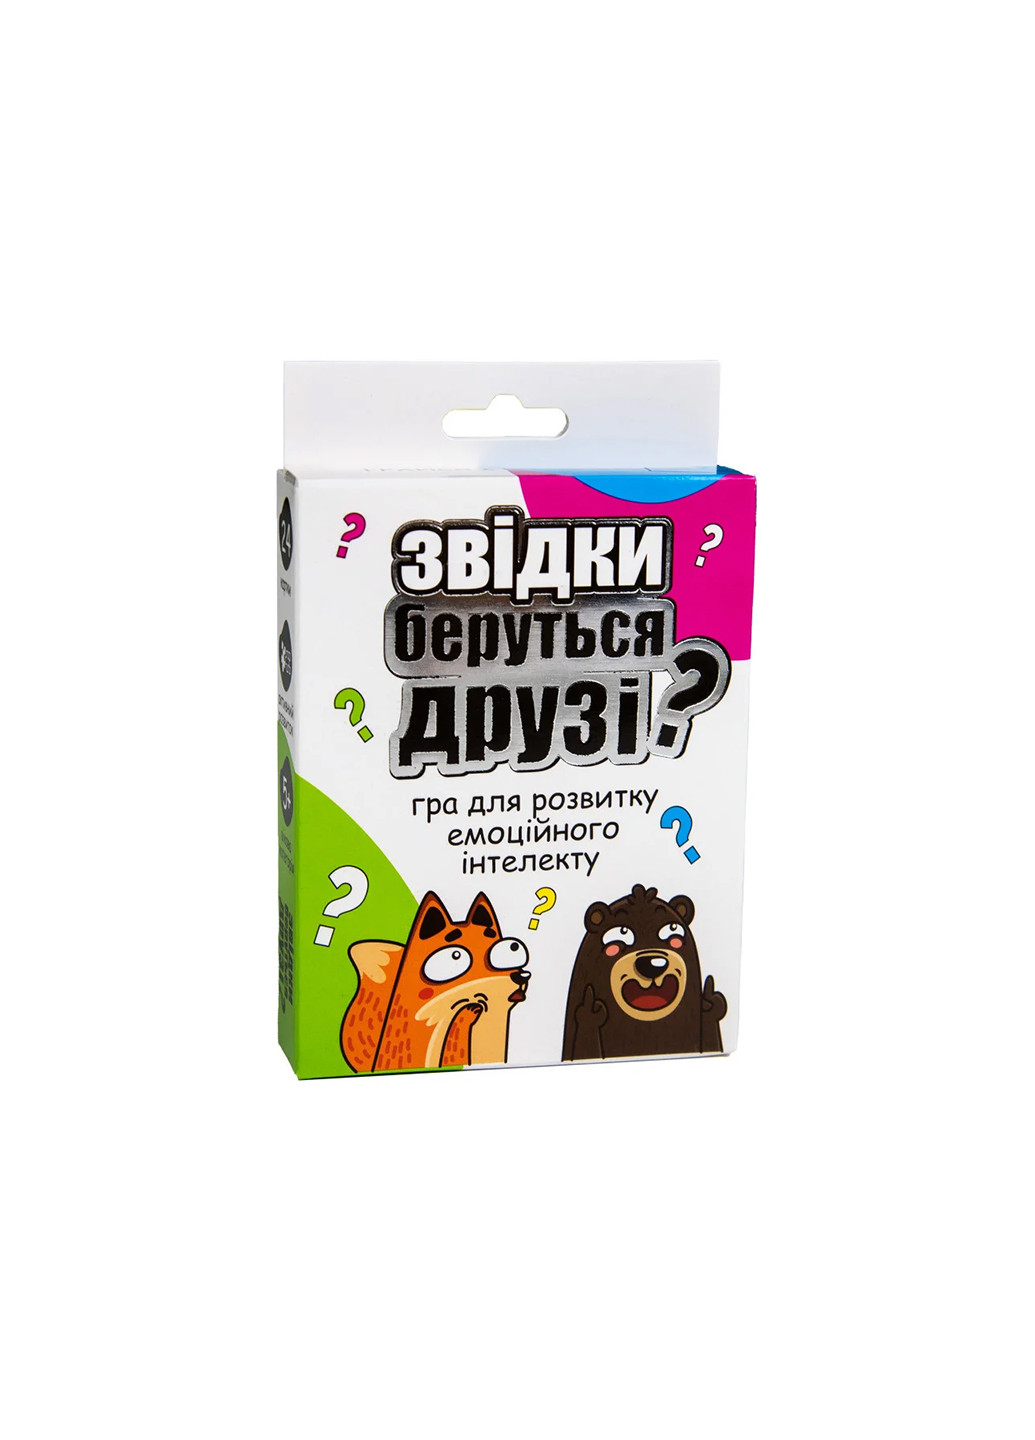 Карточная игра Откуда берутся друзья? развлекательная на украинском языке () Strateg 30238 (255292199)